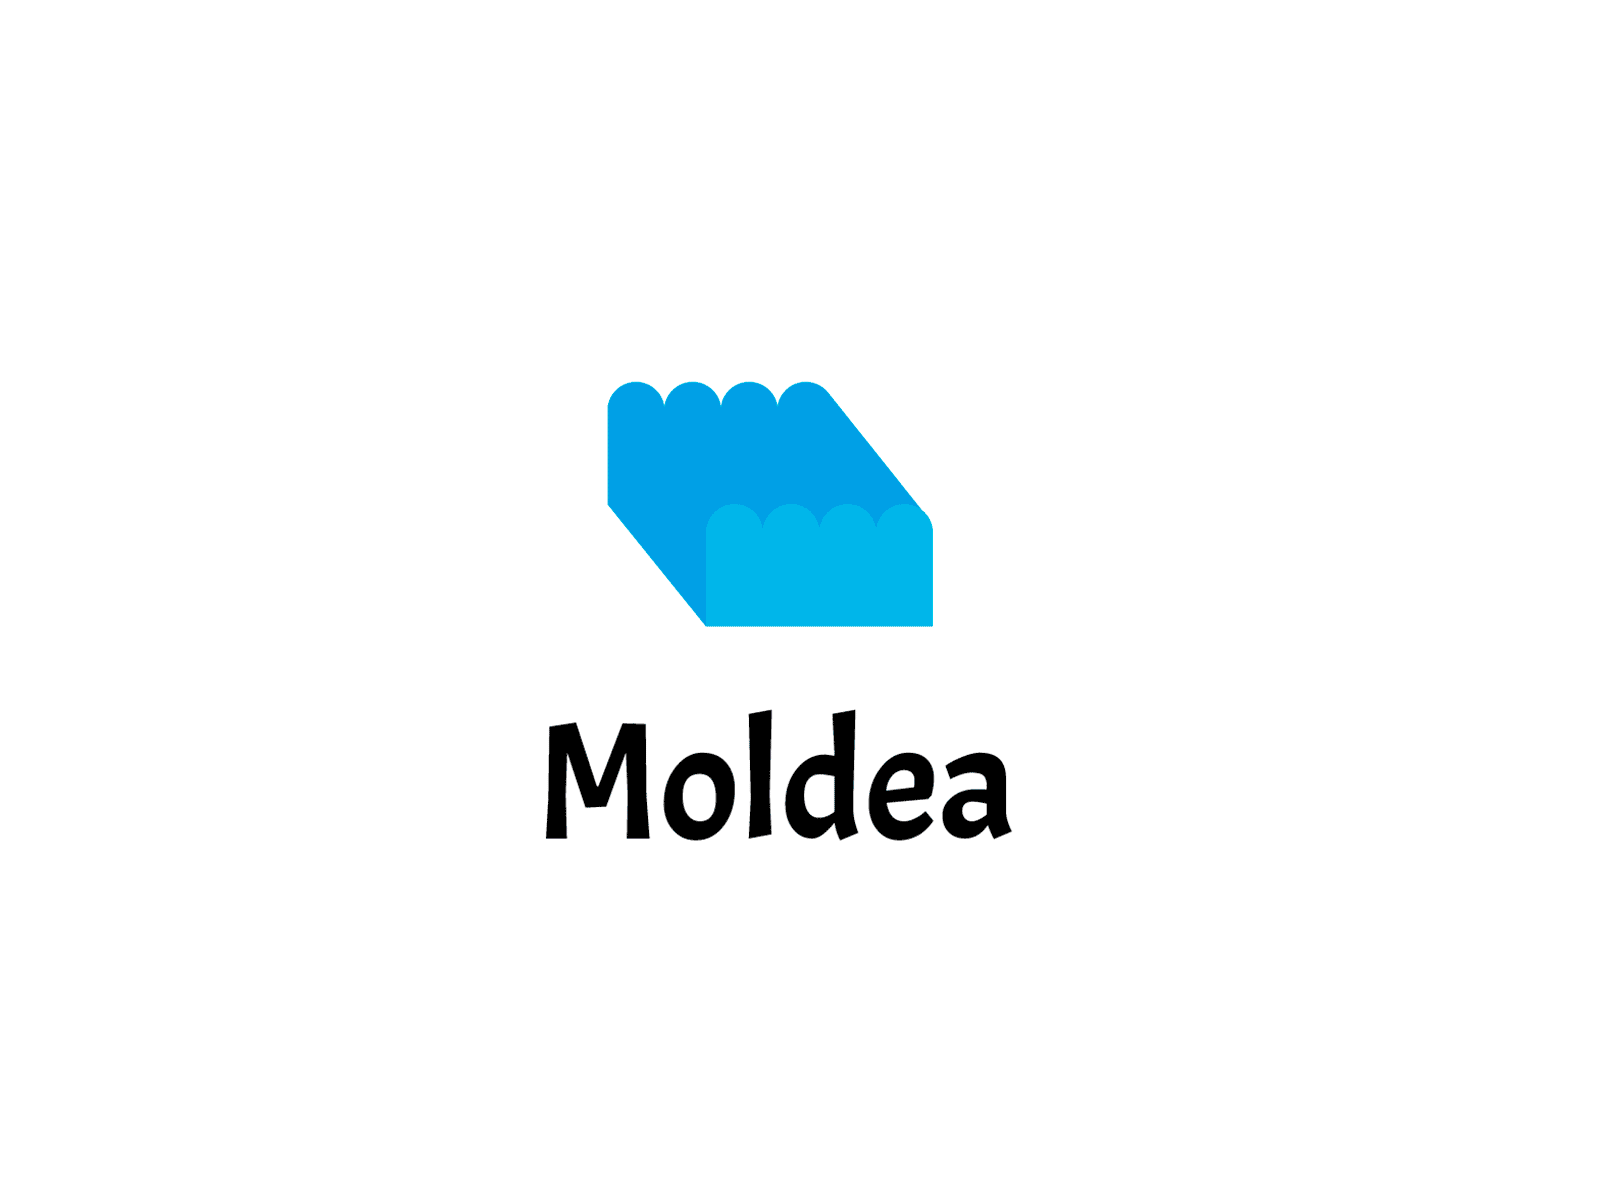 Moldea branding design logo